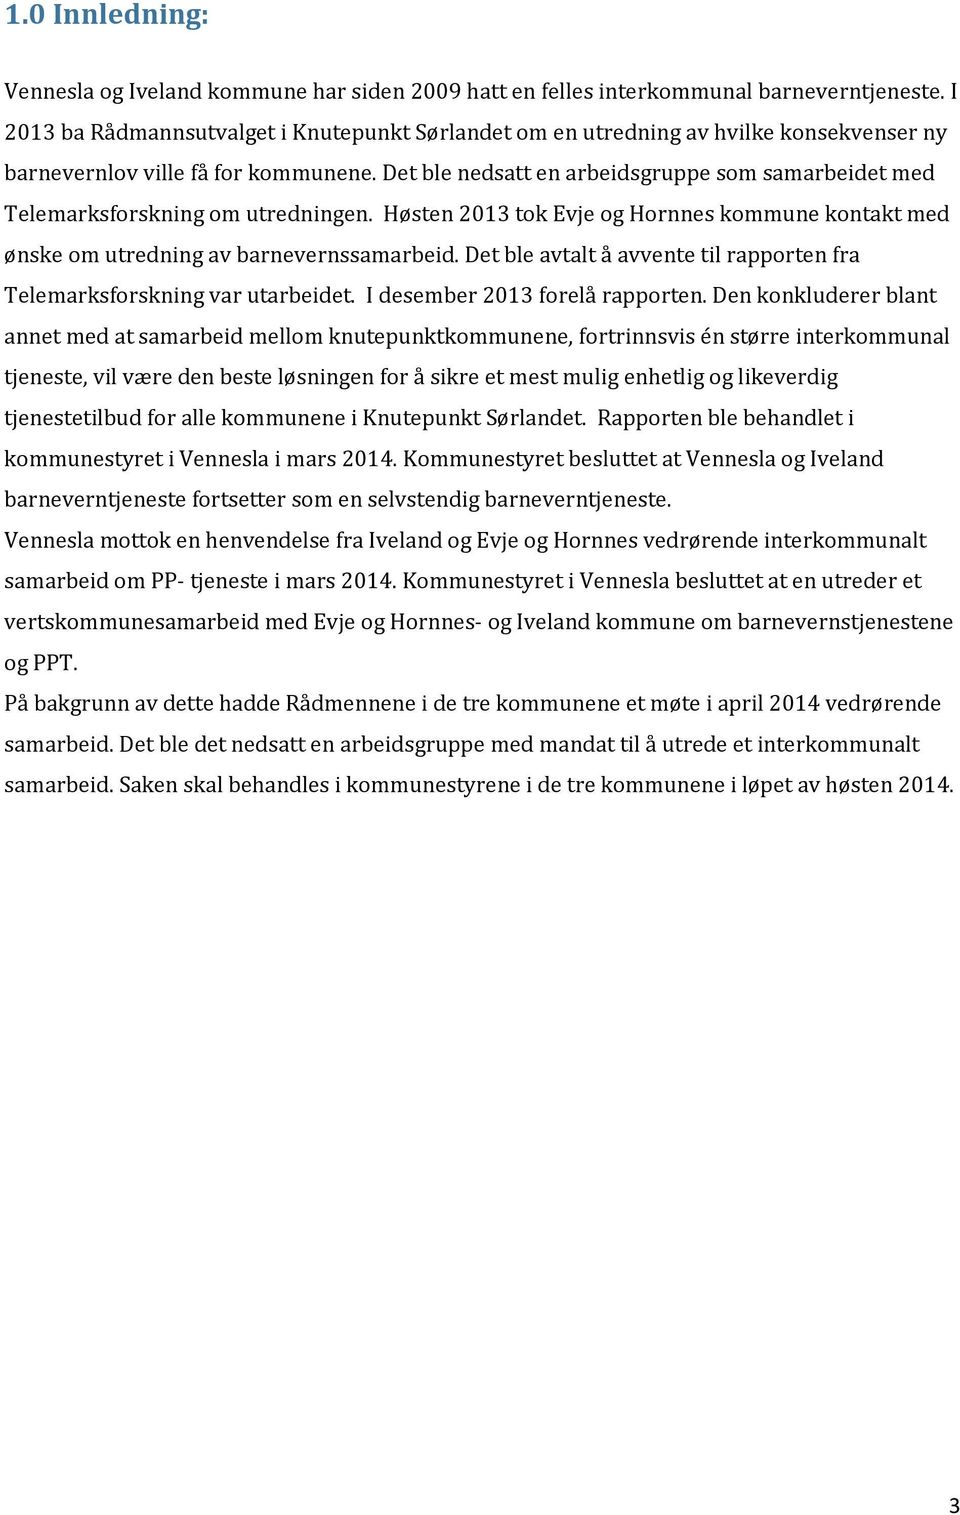 Det ble nedsatt en arbeidsgruppe som samarbeidet med Telemarksforskning om utredningen. Høsten 2013 tok Evje og Hornnes kommune kontakt med ønske om utredning av barnevernssamarbeid.